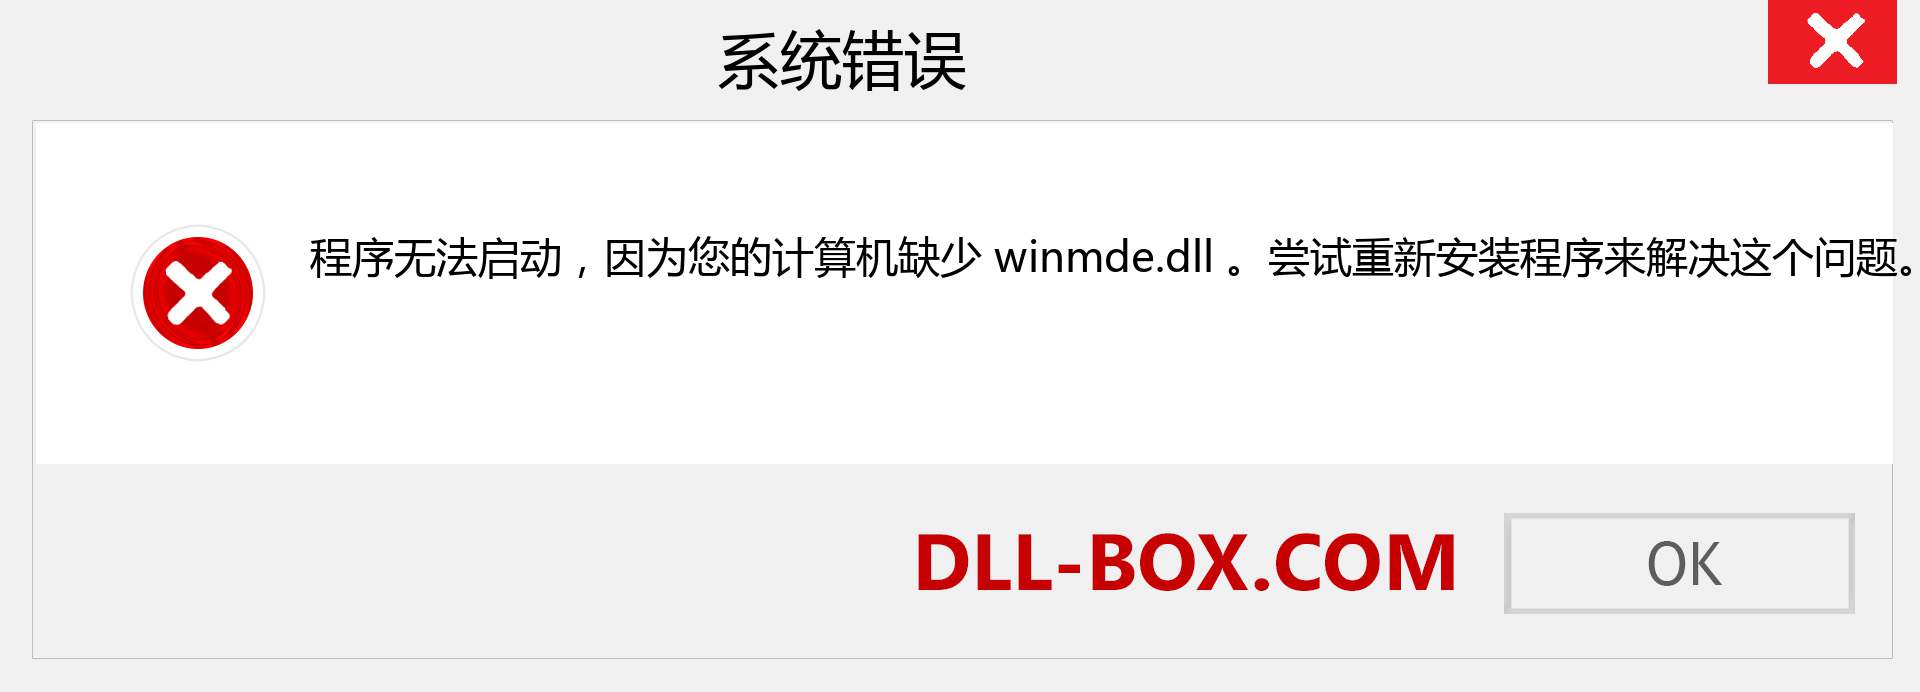 winmde.dll 文件丢失？。 适用于 Windows 7、8、10 的下载 - 修复 Windows、照片、图像上的 winmde dll 丢失错误